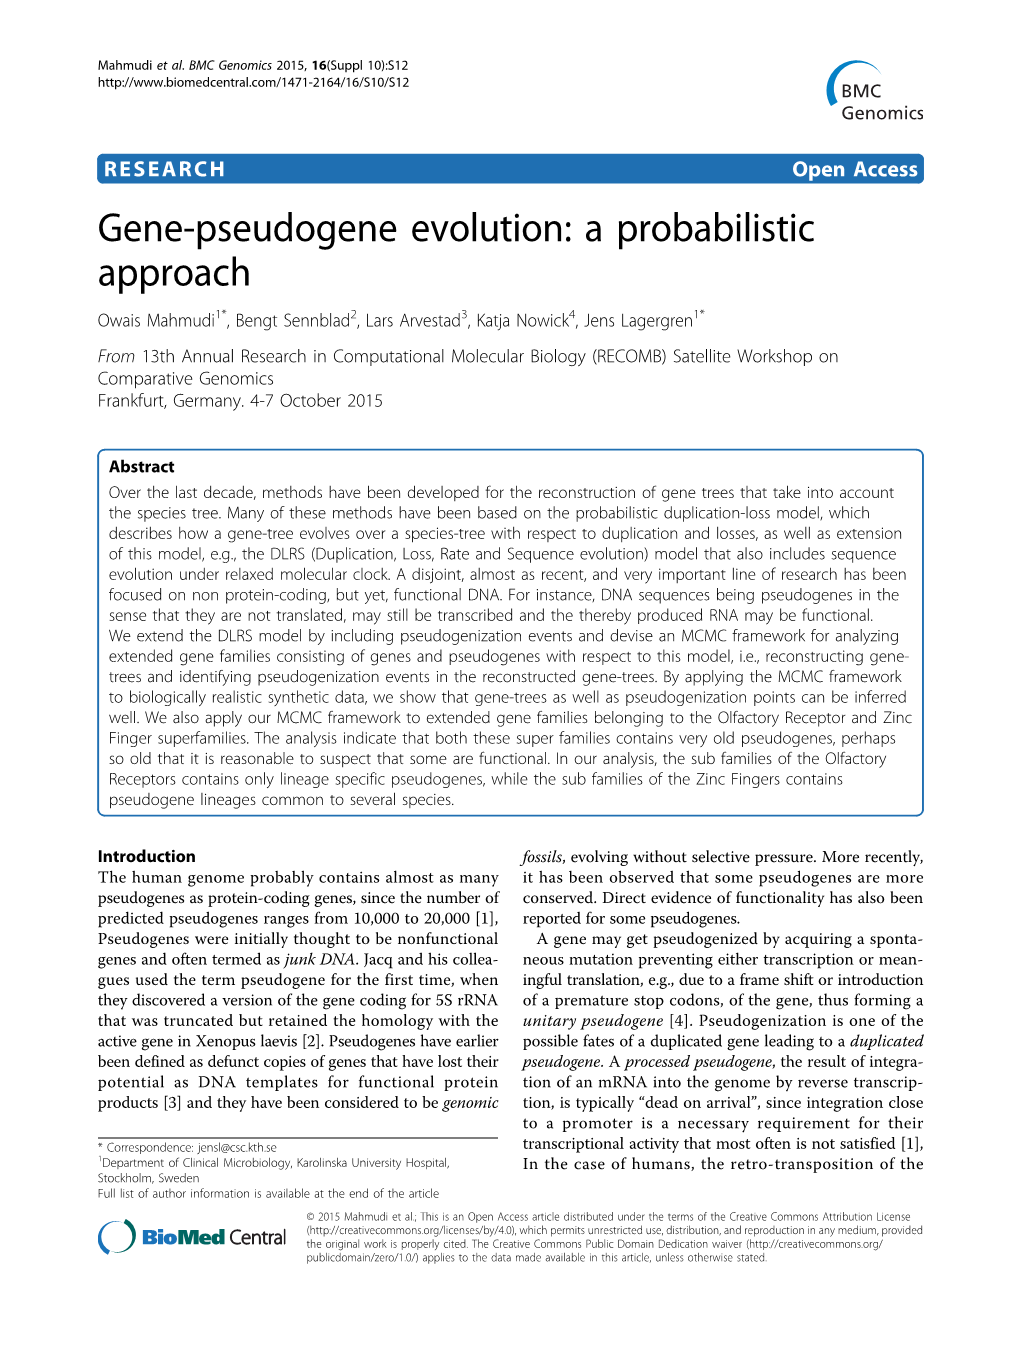 Gene-Pseudogene Evolution